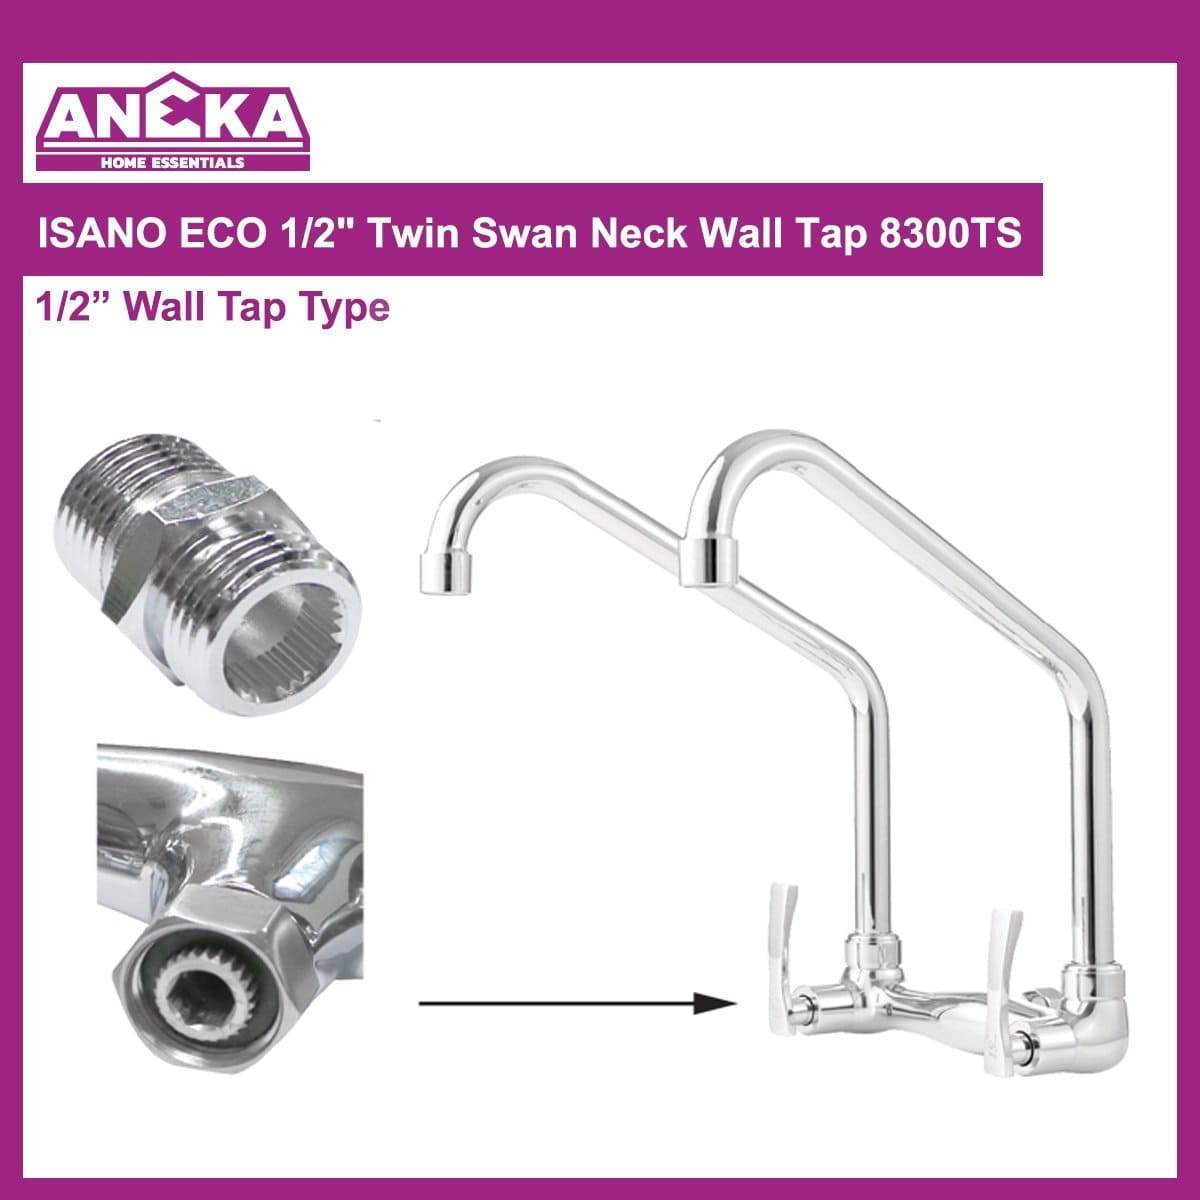 ISANO ECO 1/2" Twin Swan Neck Wall Tap 8300TS